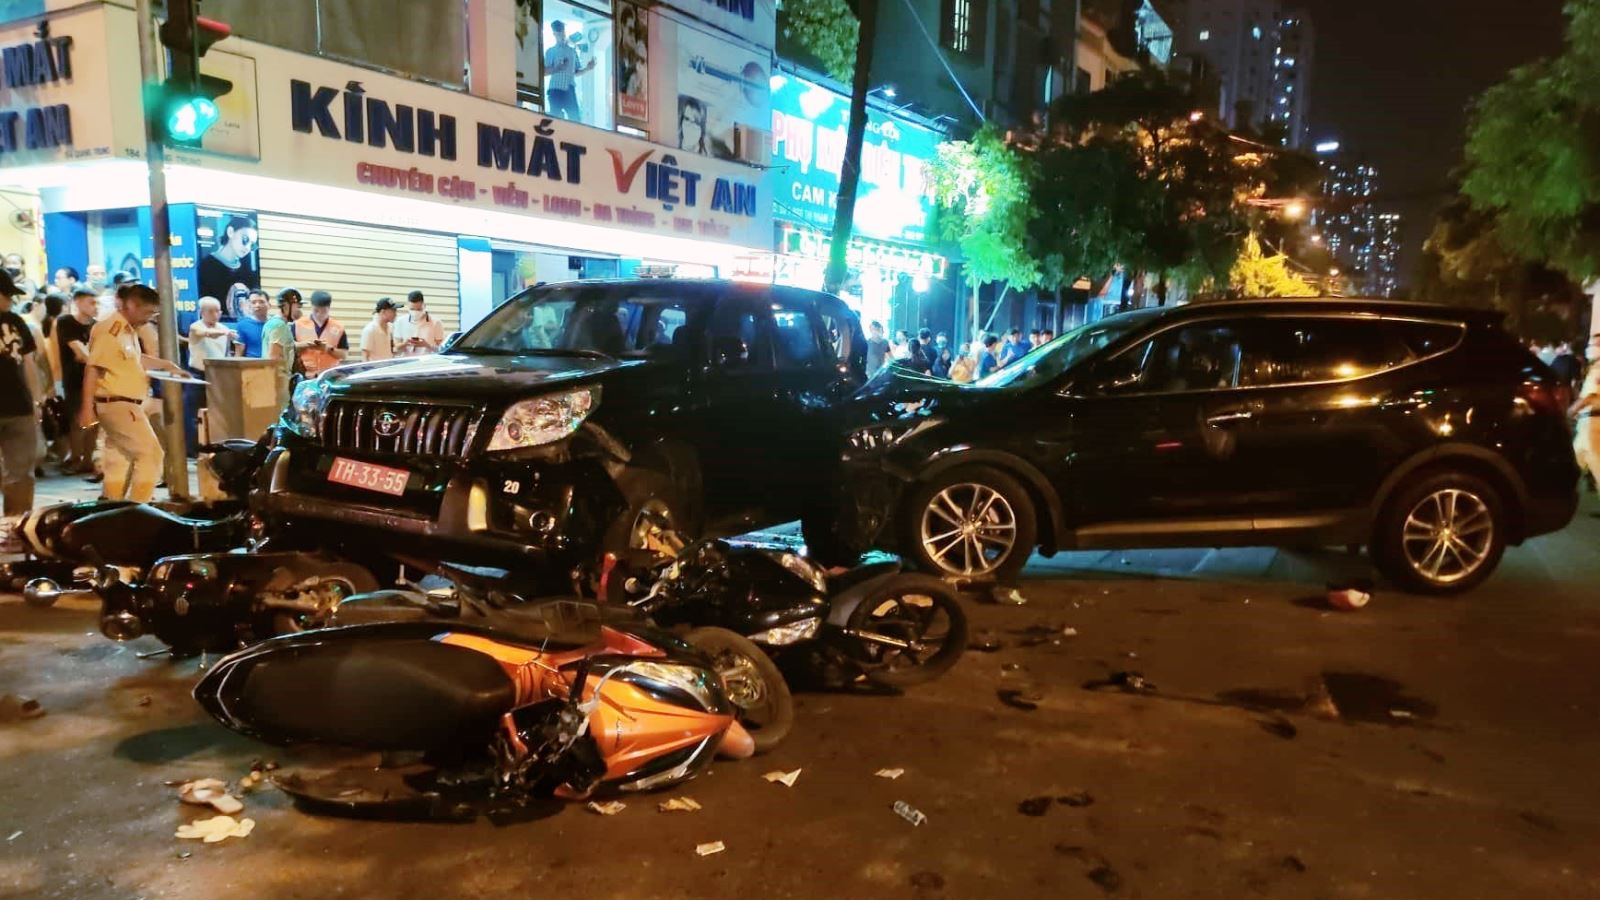 Hà Nội: Tai nạn giao thông liên hoàn giữa nhiều ô tô và xe máy tại quận Hà Đông